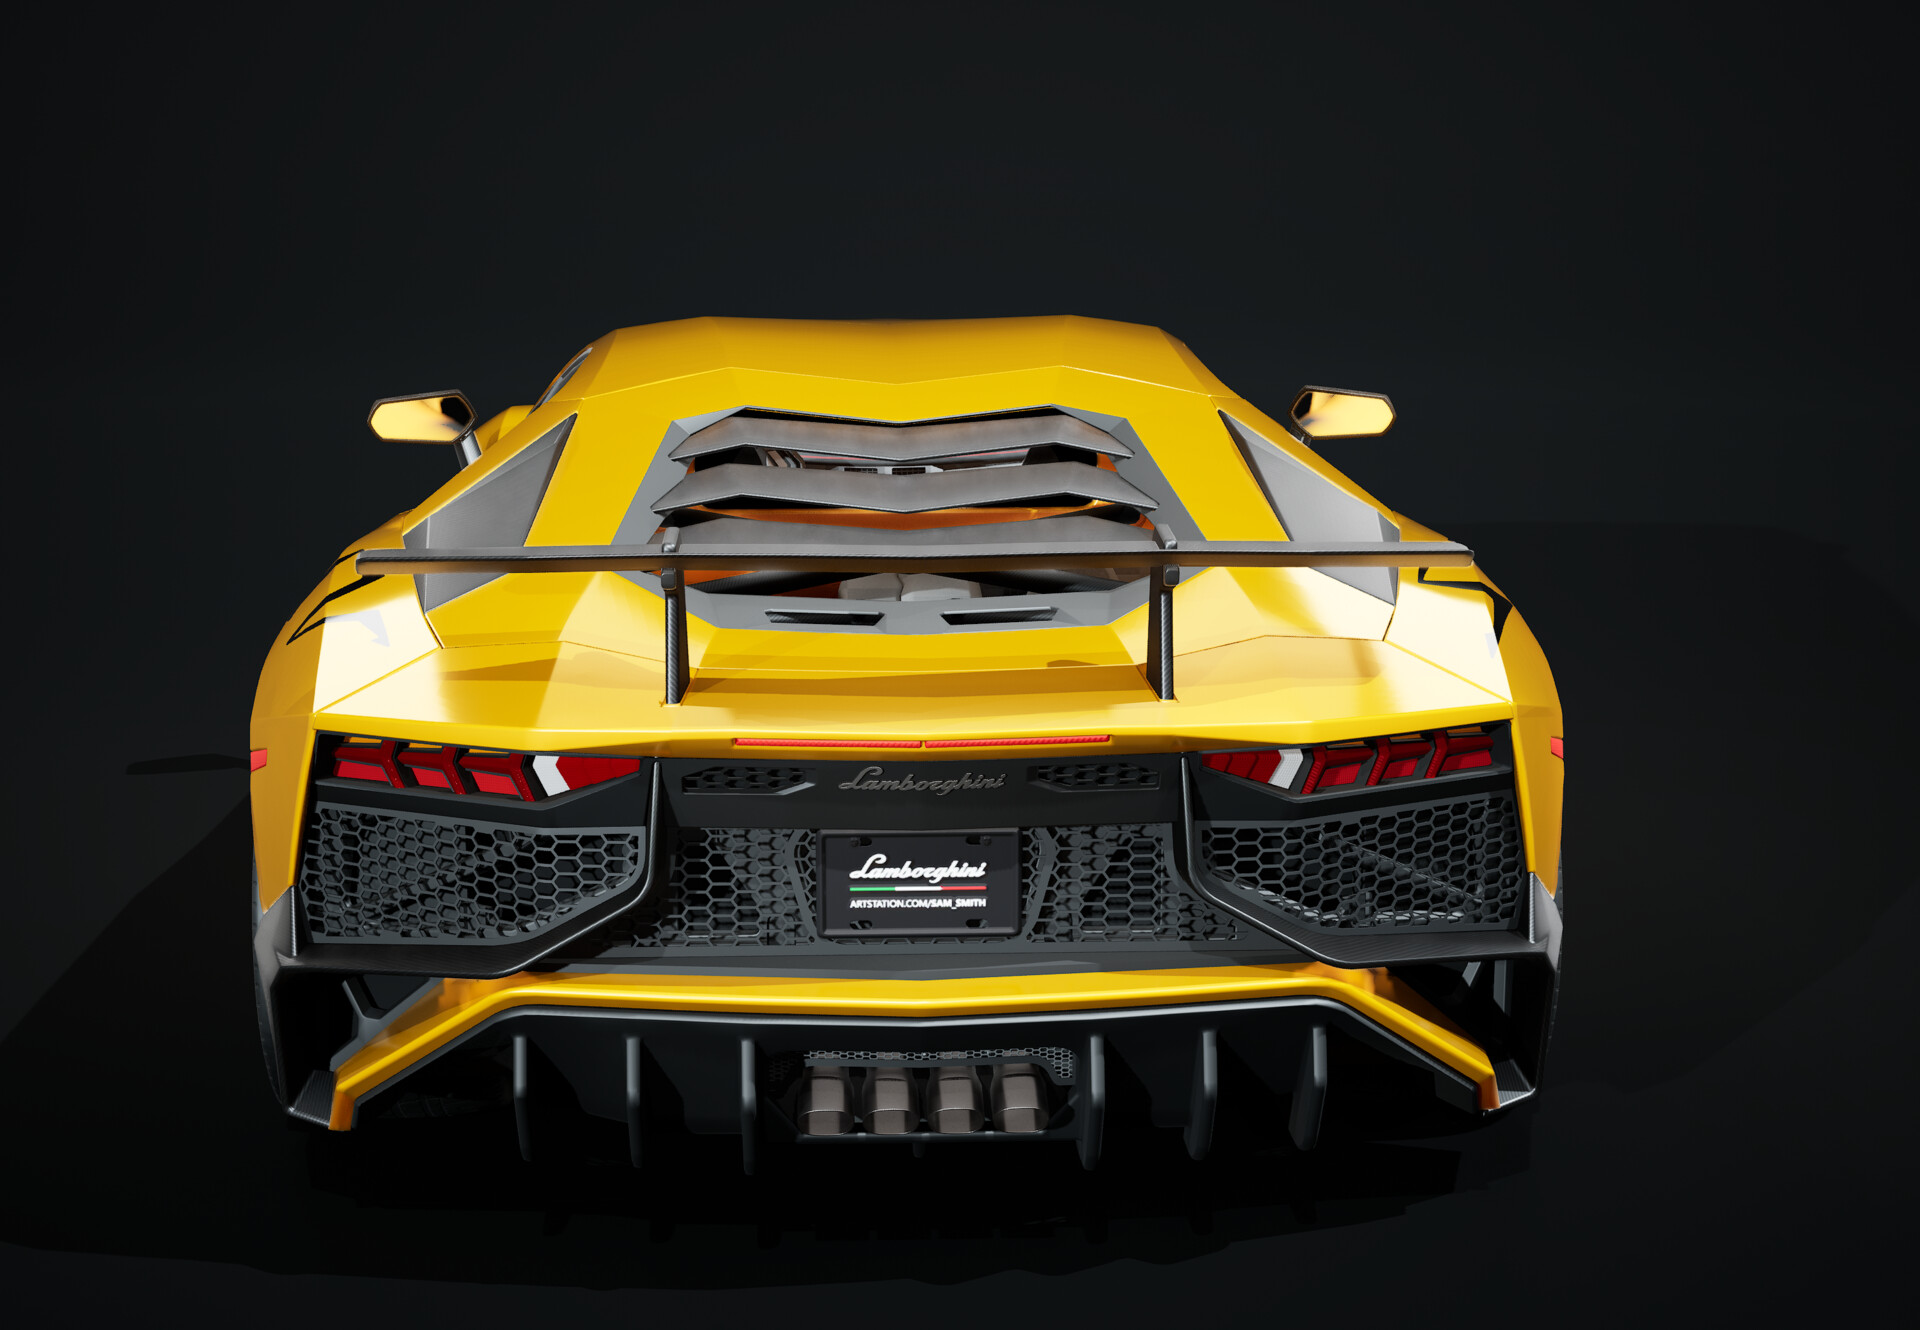 Sam Smith - Unreal Engine 5 Lamborghini Aventador LP750-4 SV